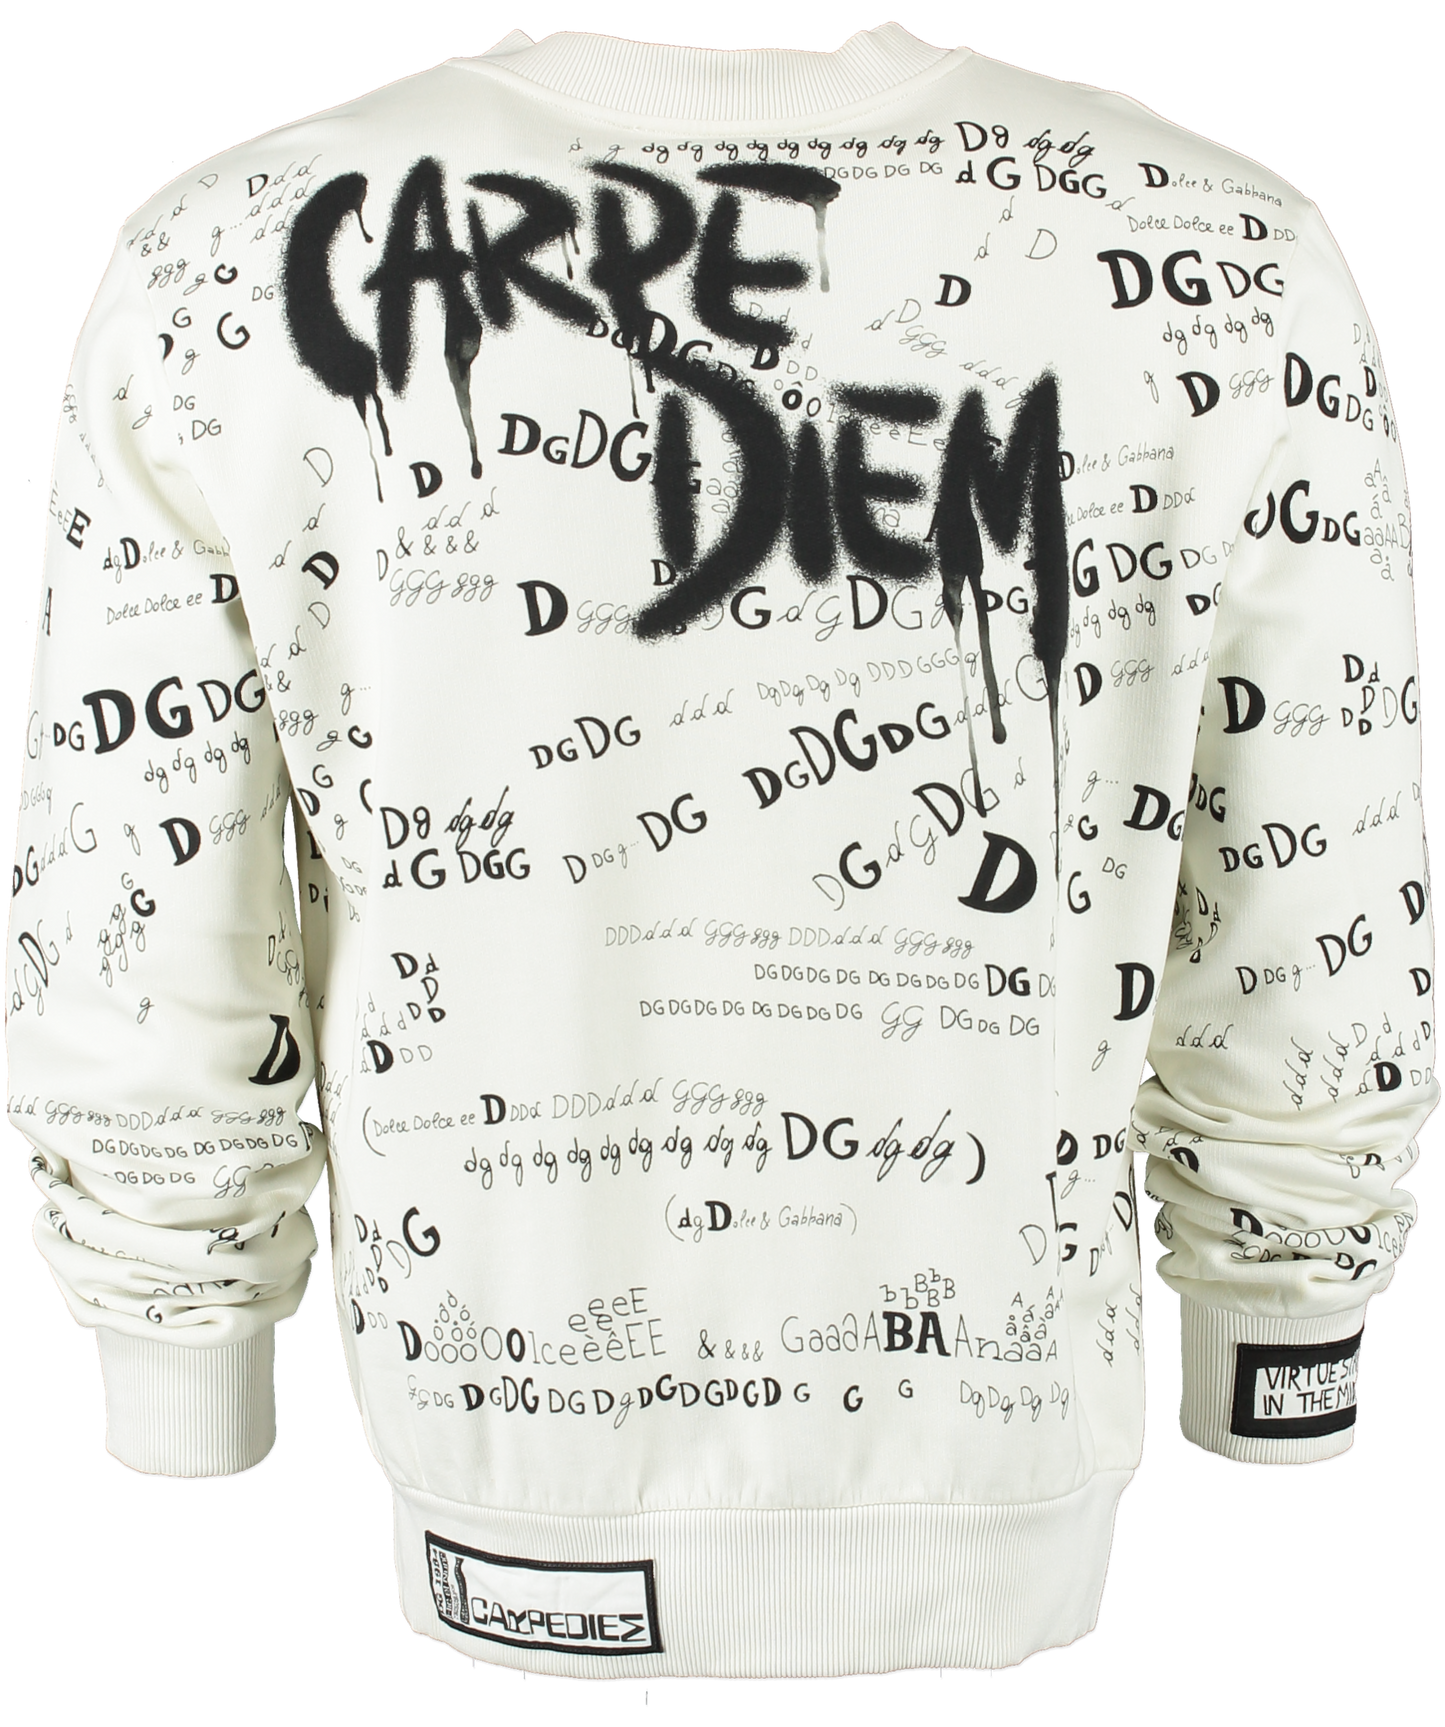 Dolce & Gabbana White Carpe Diem Sweatshirt UK M